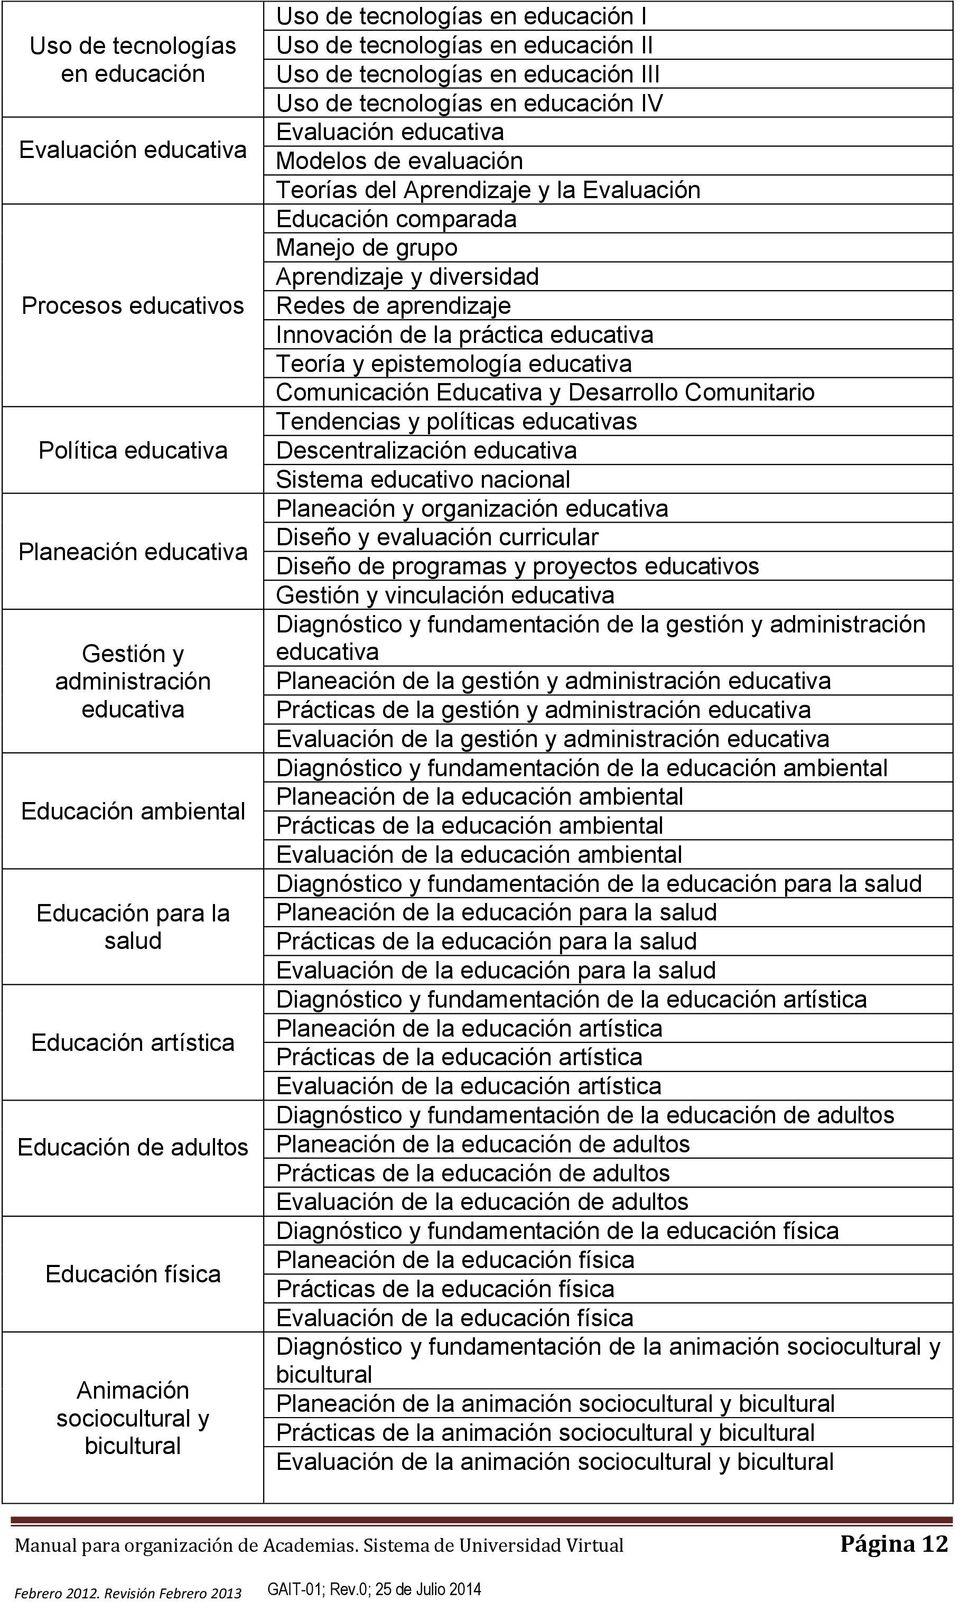 Uso de tecnologías en educación IV Evaluación educativa Modelos de evaluación Teorías del Aprendizaje y la Evaluación Educación comparada Manejo de grupo Aprendizaje y diversidad Redes de aprendizaje